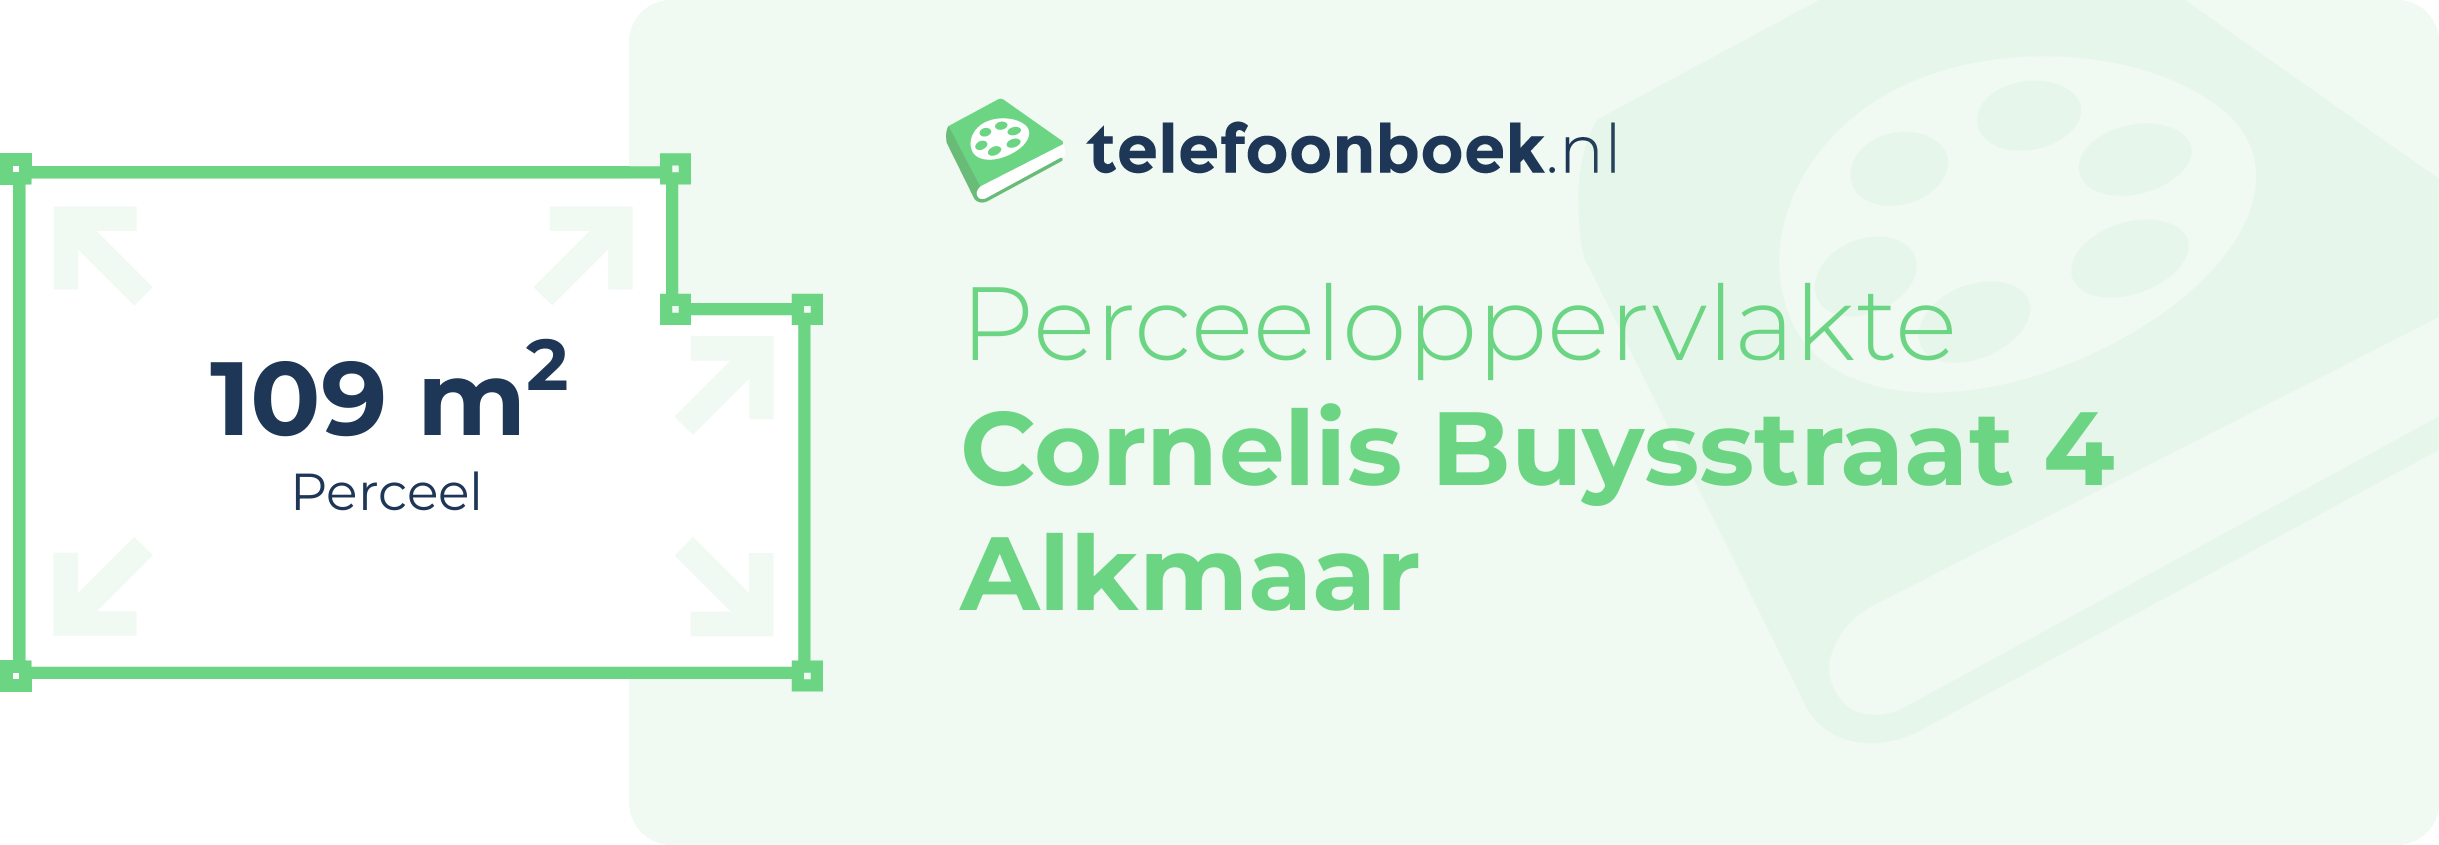 Perceeloppervlakte Cornelis Buysstraat 4 Alkmaar